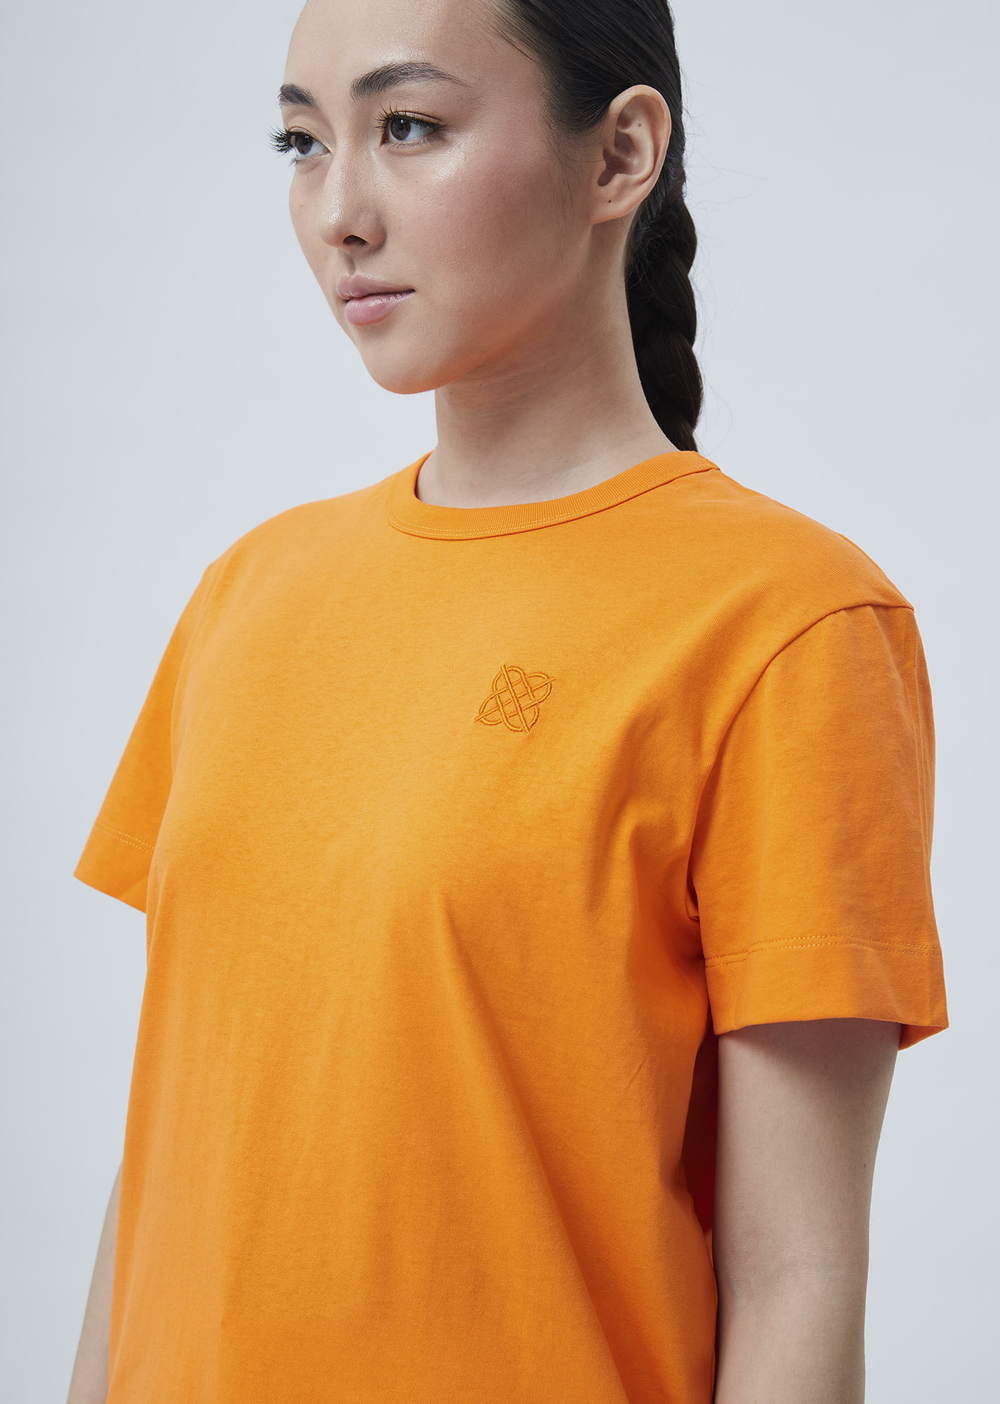 Женская футболка с вышивкой оранжевый р.XXL